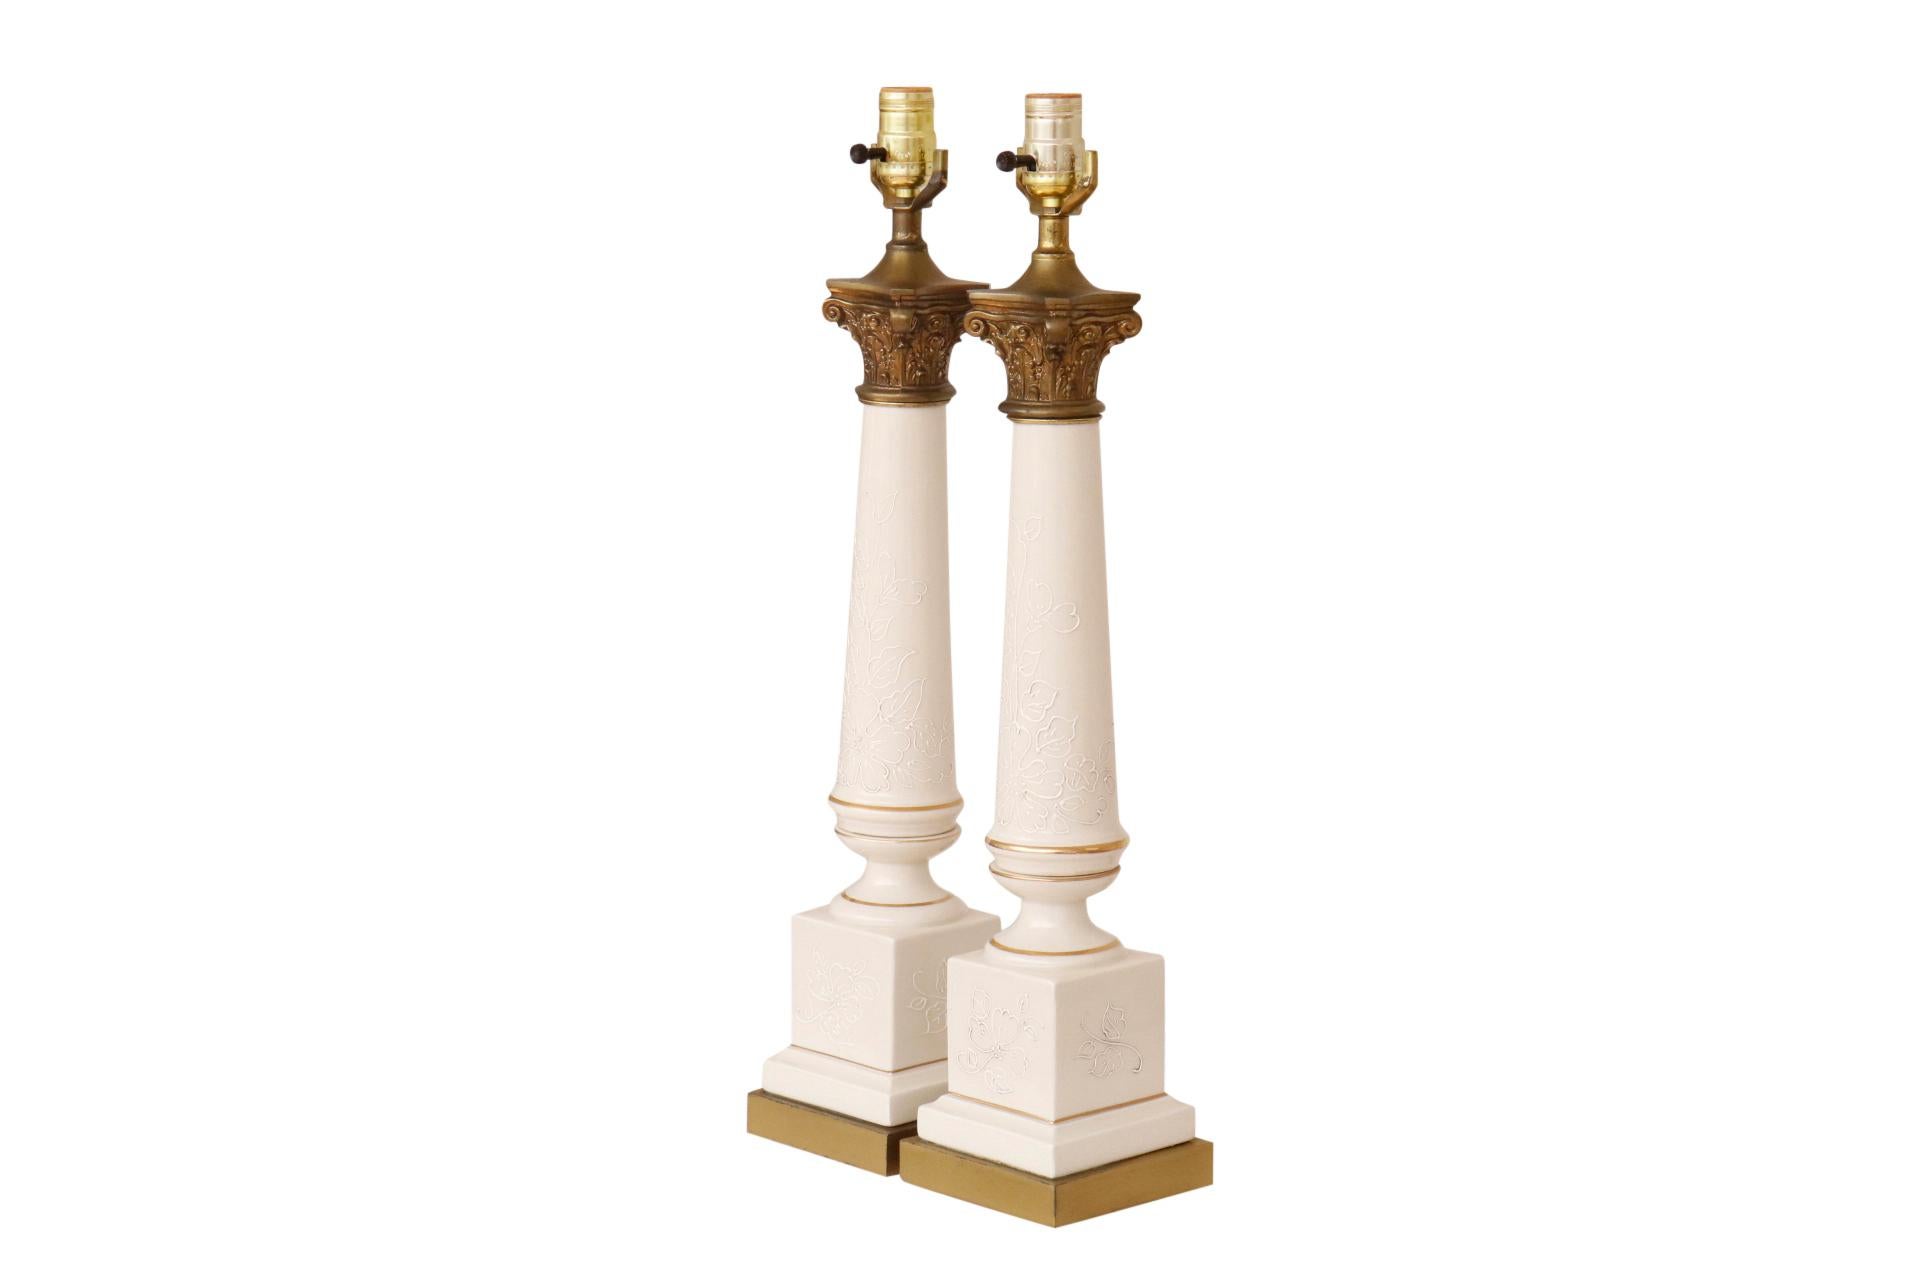 Une paire de lampes de table en céramique de style Empire français par Tyndale. Les colonnes élégantes en forme de balustre sont surmontées de chapiteaux en laiton ornés de feuilles d'acanthe chantournées. Les colonnes sont décorées d'un motif